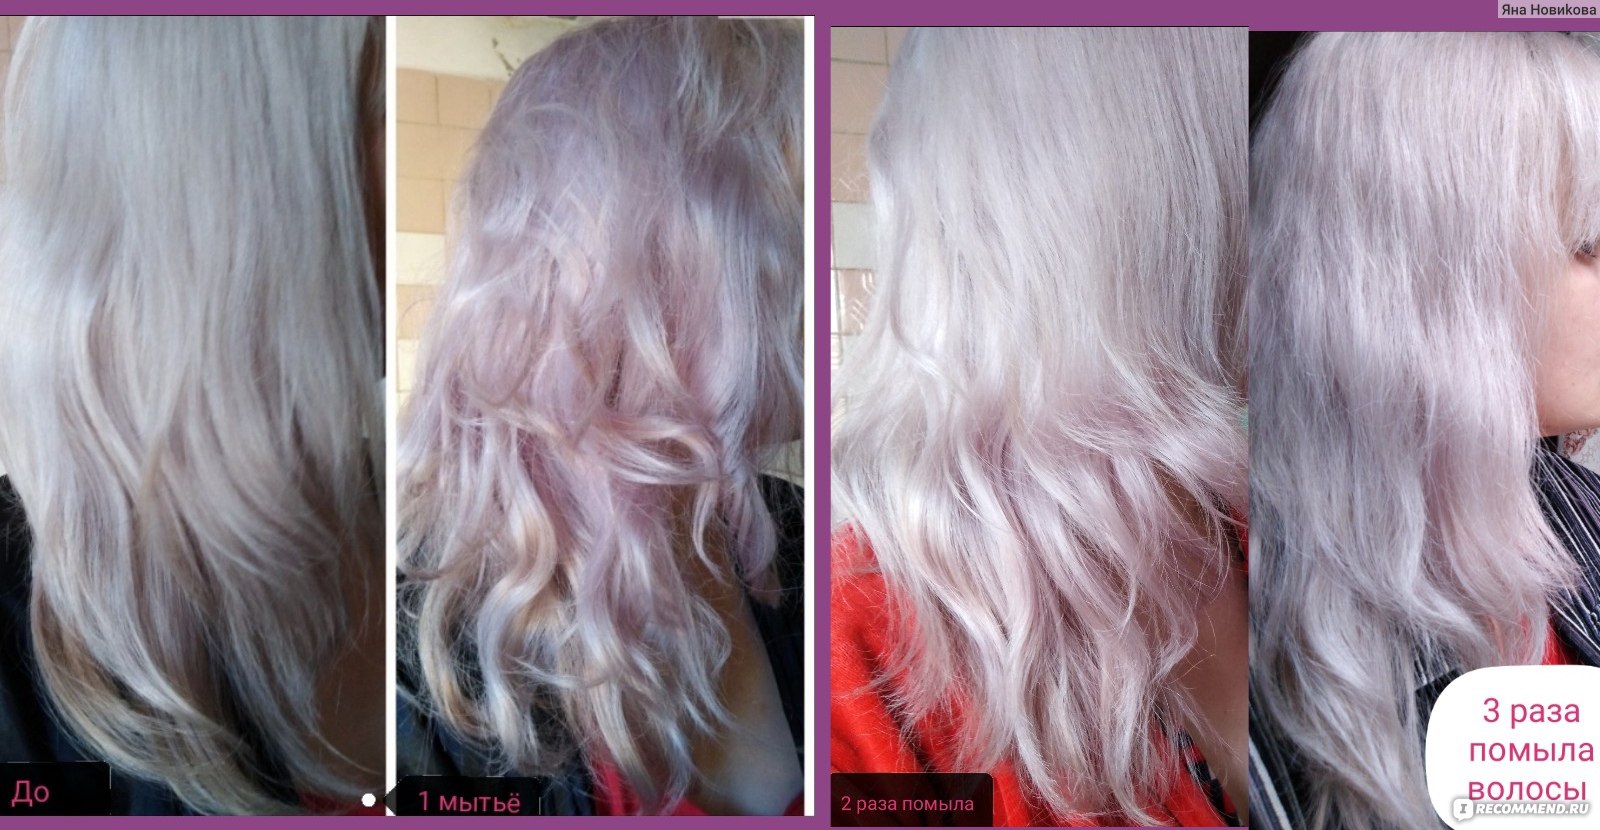 Concept оттеночный бальзам для волос жемчужный блонд фото до и после